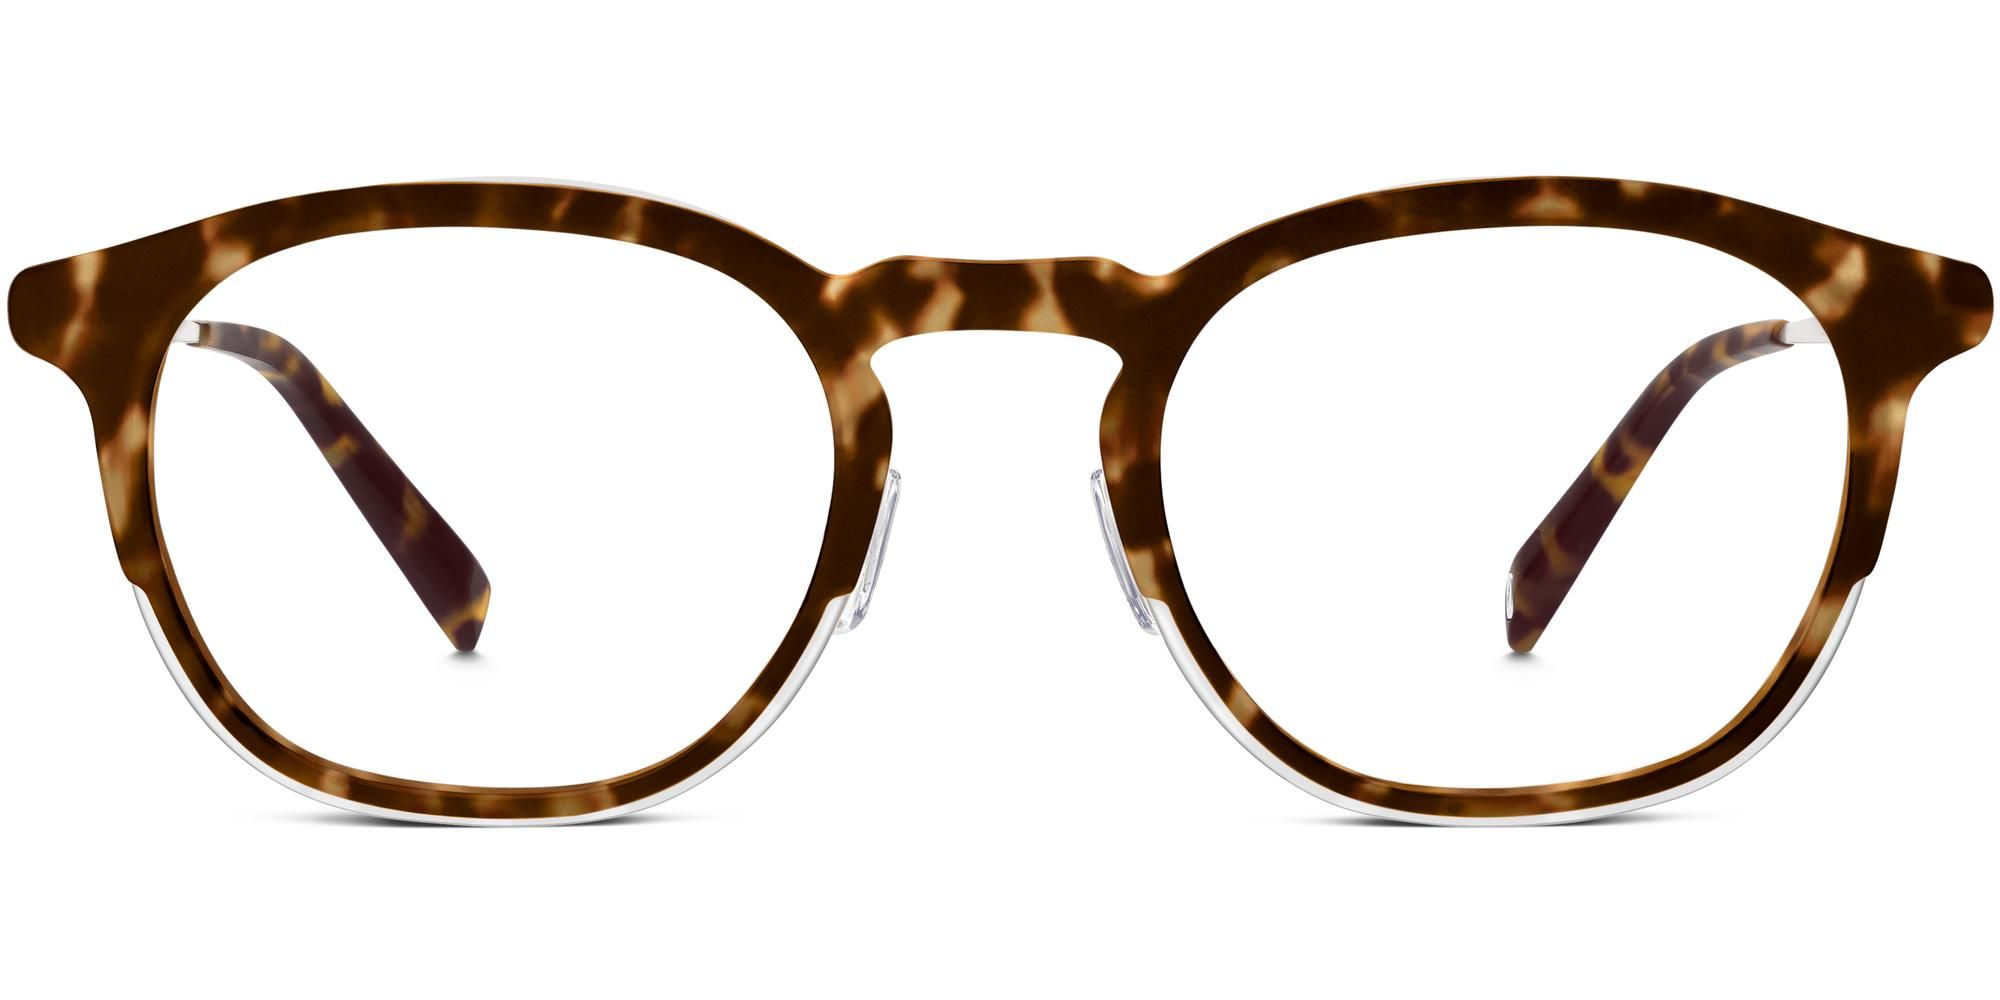 Tate Eyeglasses in Hazelnut Tortoise Matte for Women | Warby Parker